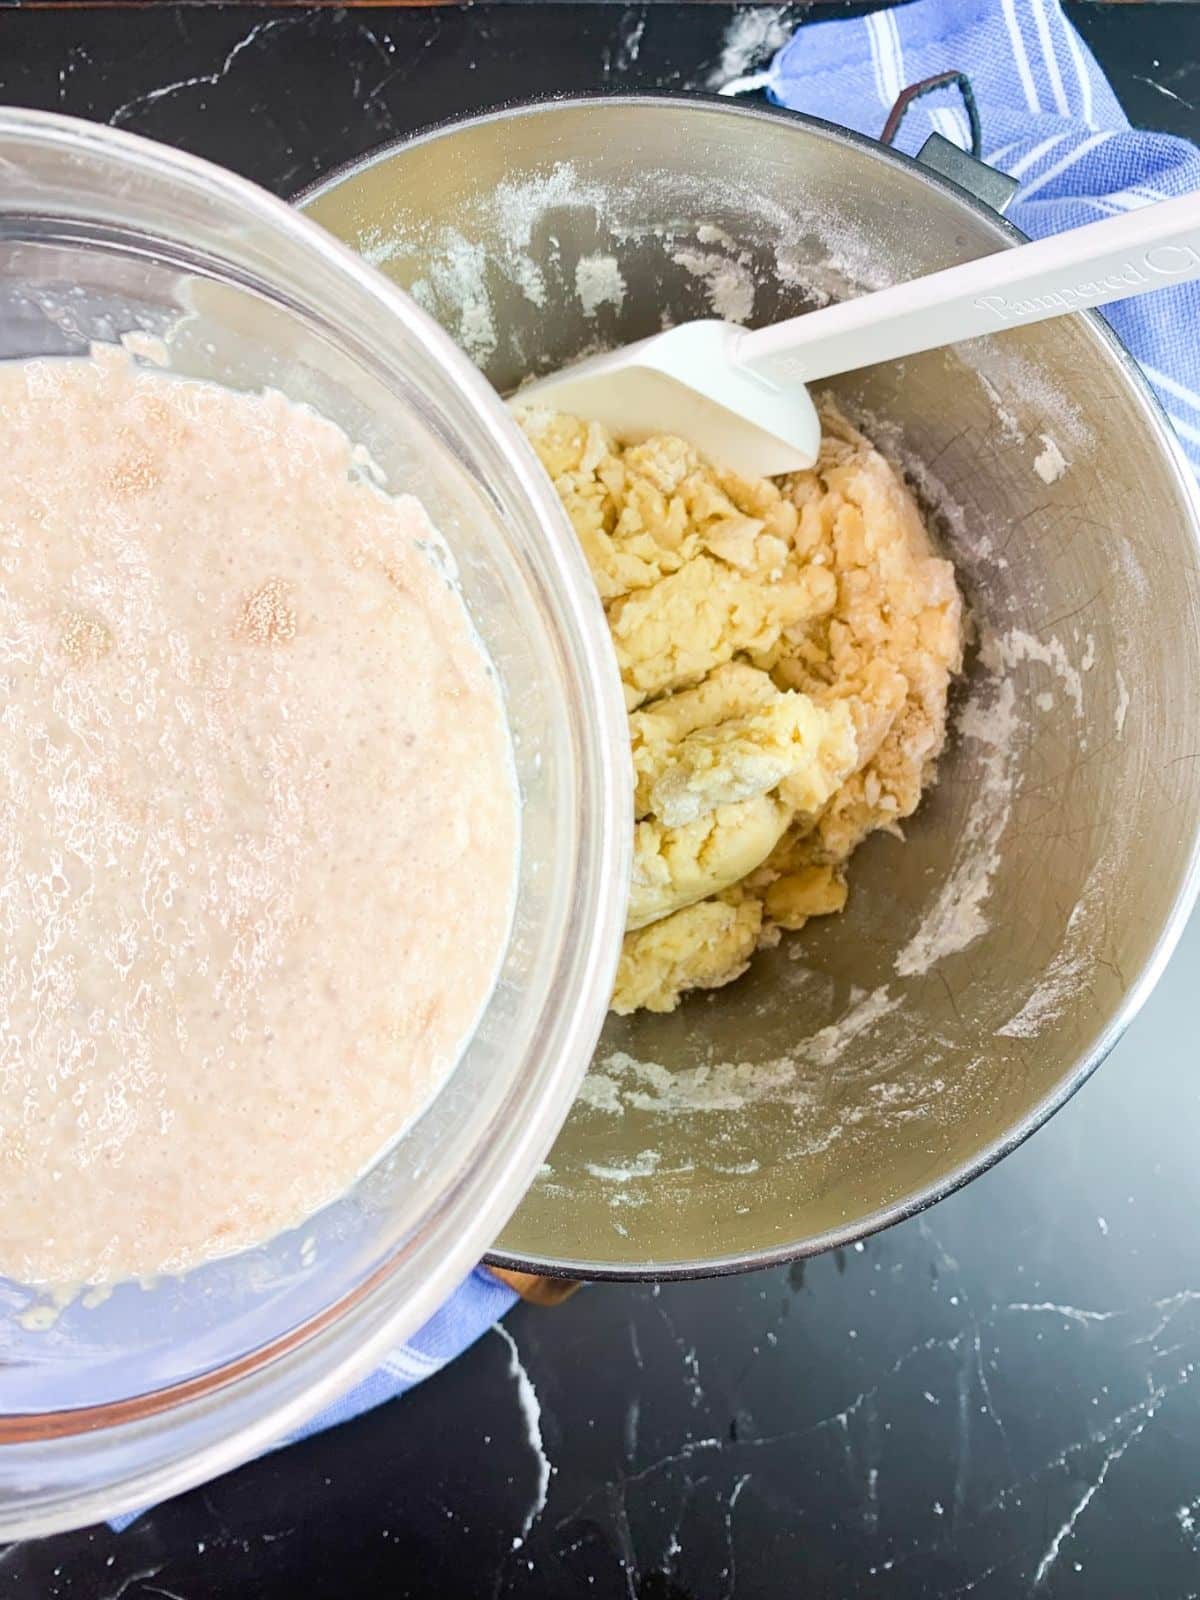 Add yeast to dough.